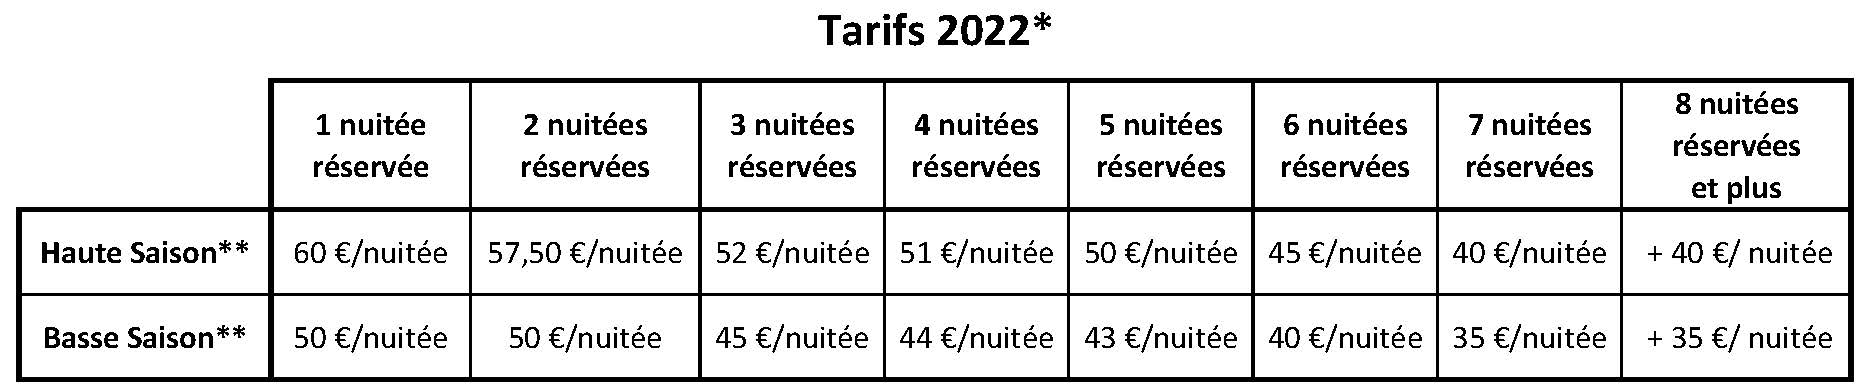 Tarifs Chez Roger 2022